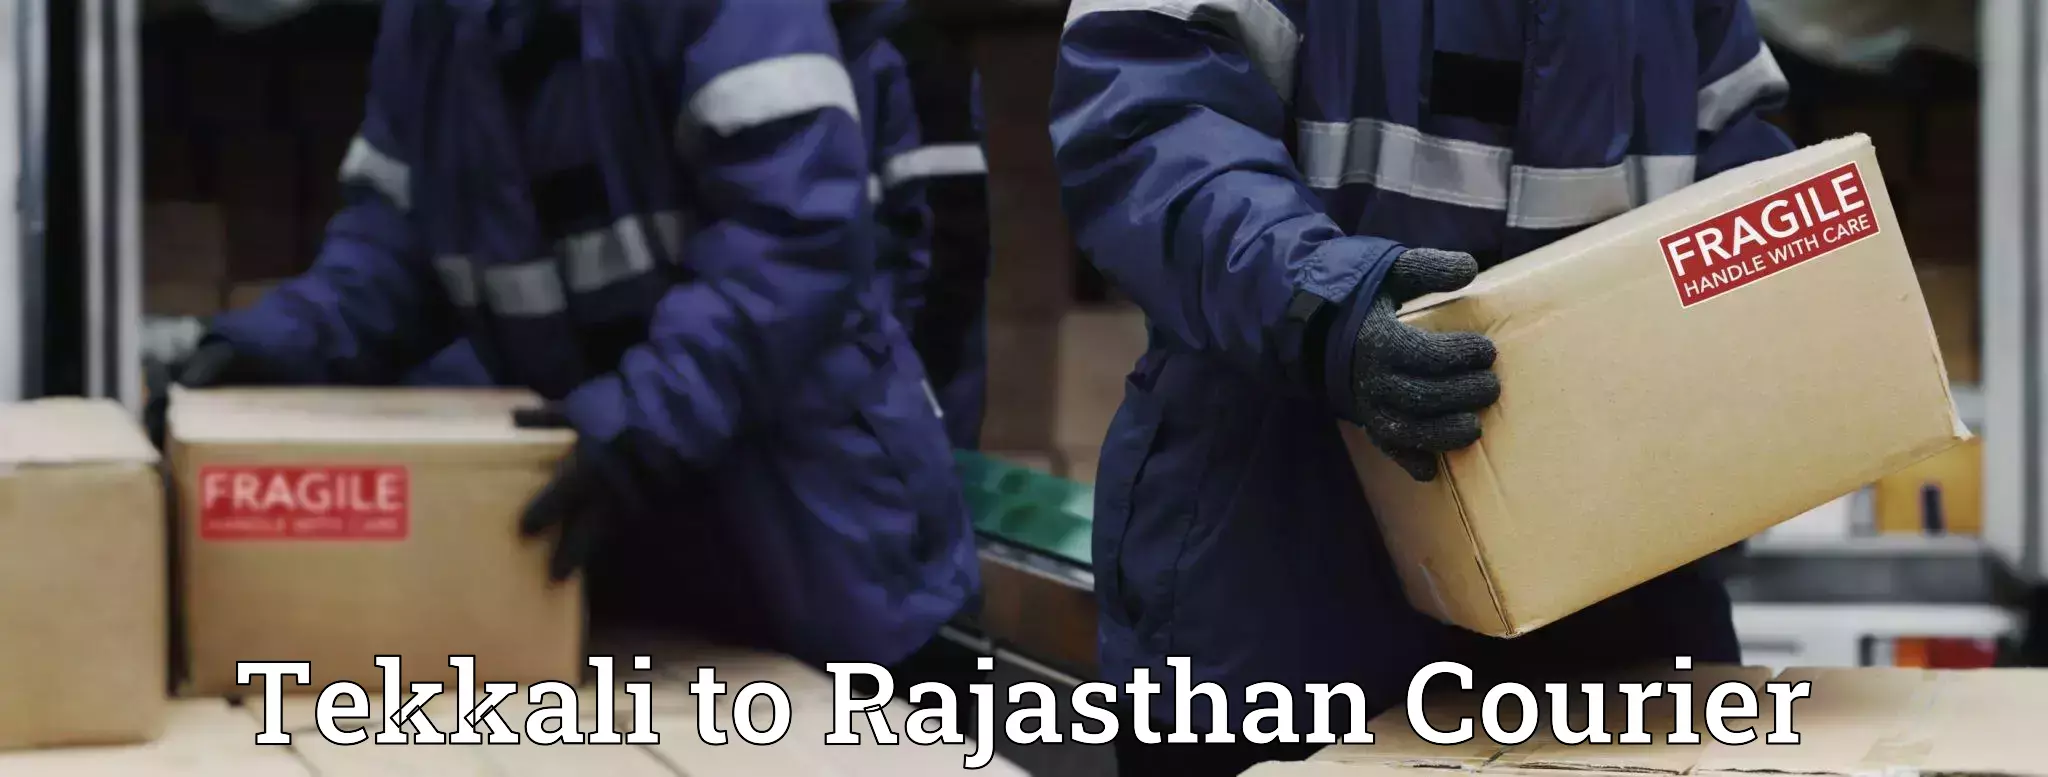 Cross-border shipping Tekkali to Rajasthan